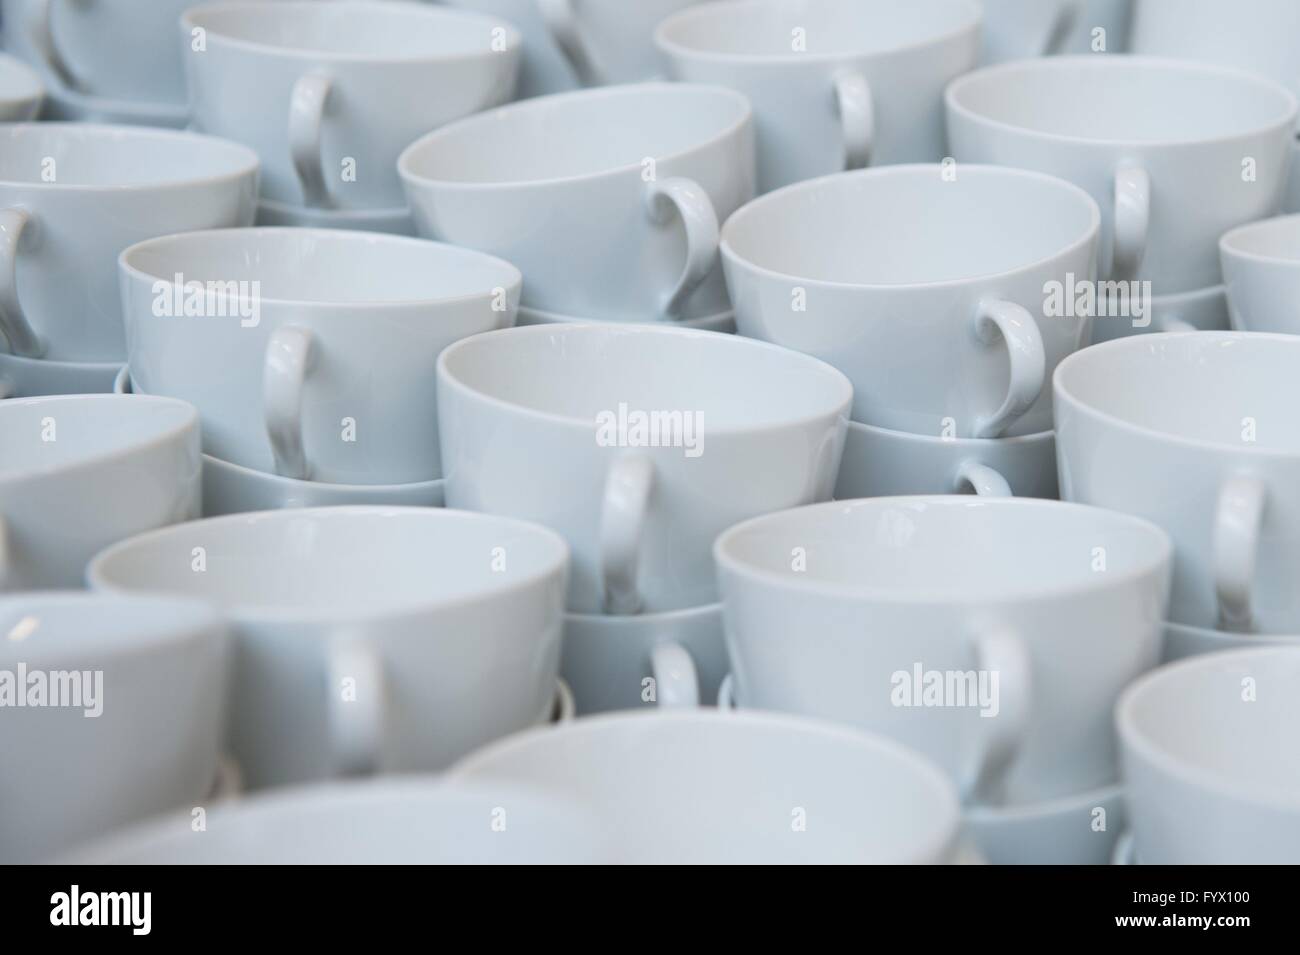 Meissen, Allemagne. Apr 27, 2016. Bonnets en porcelaine de Meissen, représenté à l'installation de production de porcelaines de Meissen à Meissen, Allemagne, 27 avril 2016. Photo : SEBASTIAN KAHNERT/dpa/Alamy Live News Banque D'Images